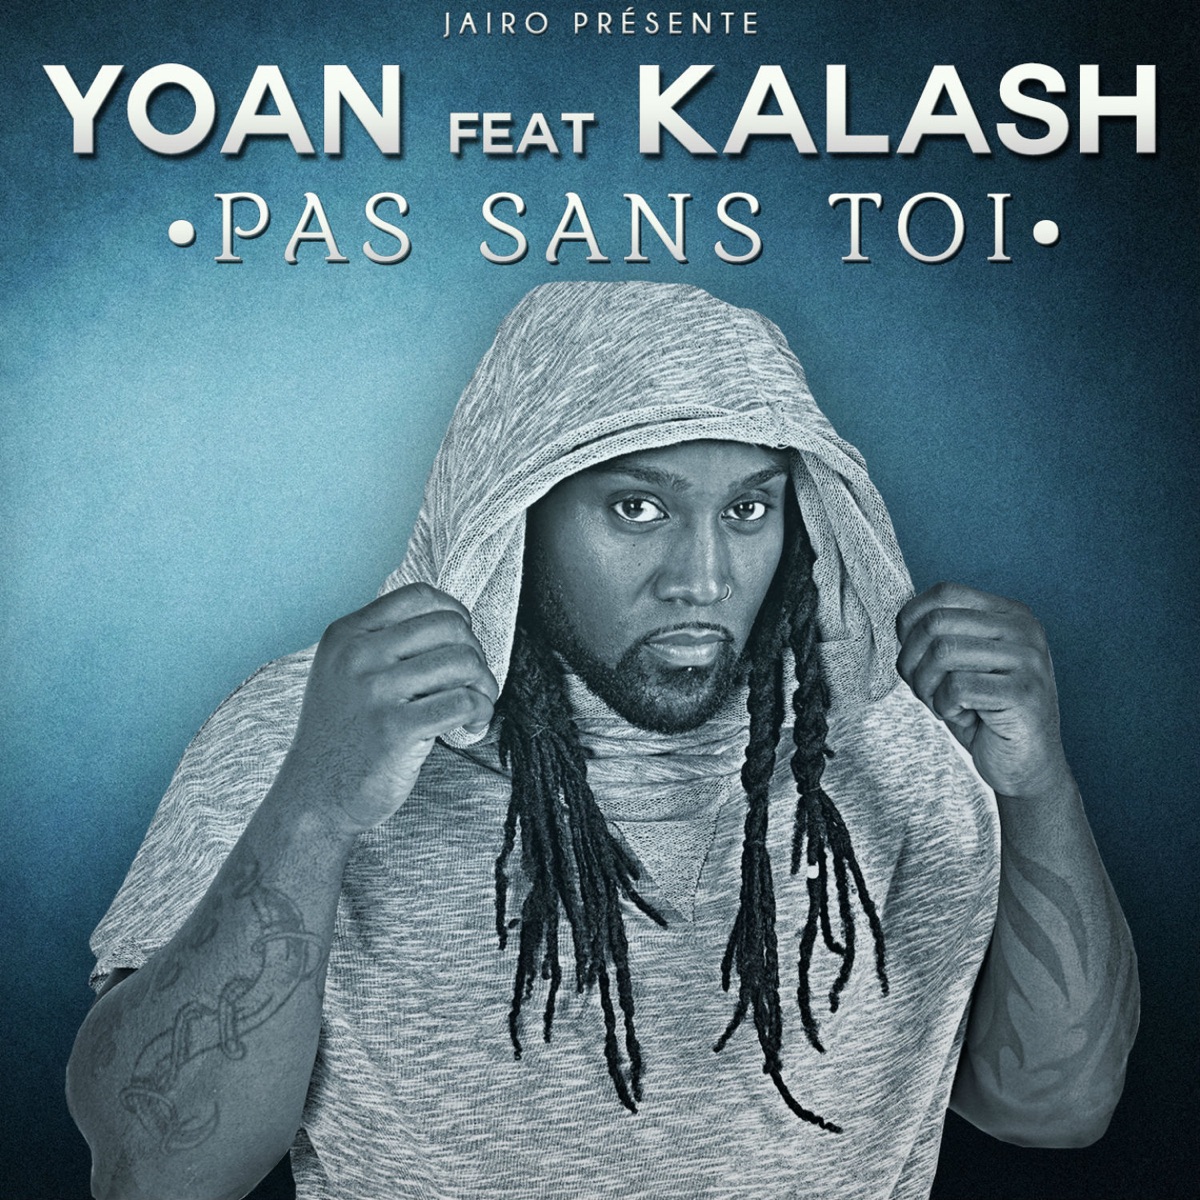 Pas sans toi (feat. Kalash) - Single par YOAN sur Apple Music